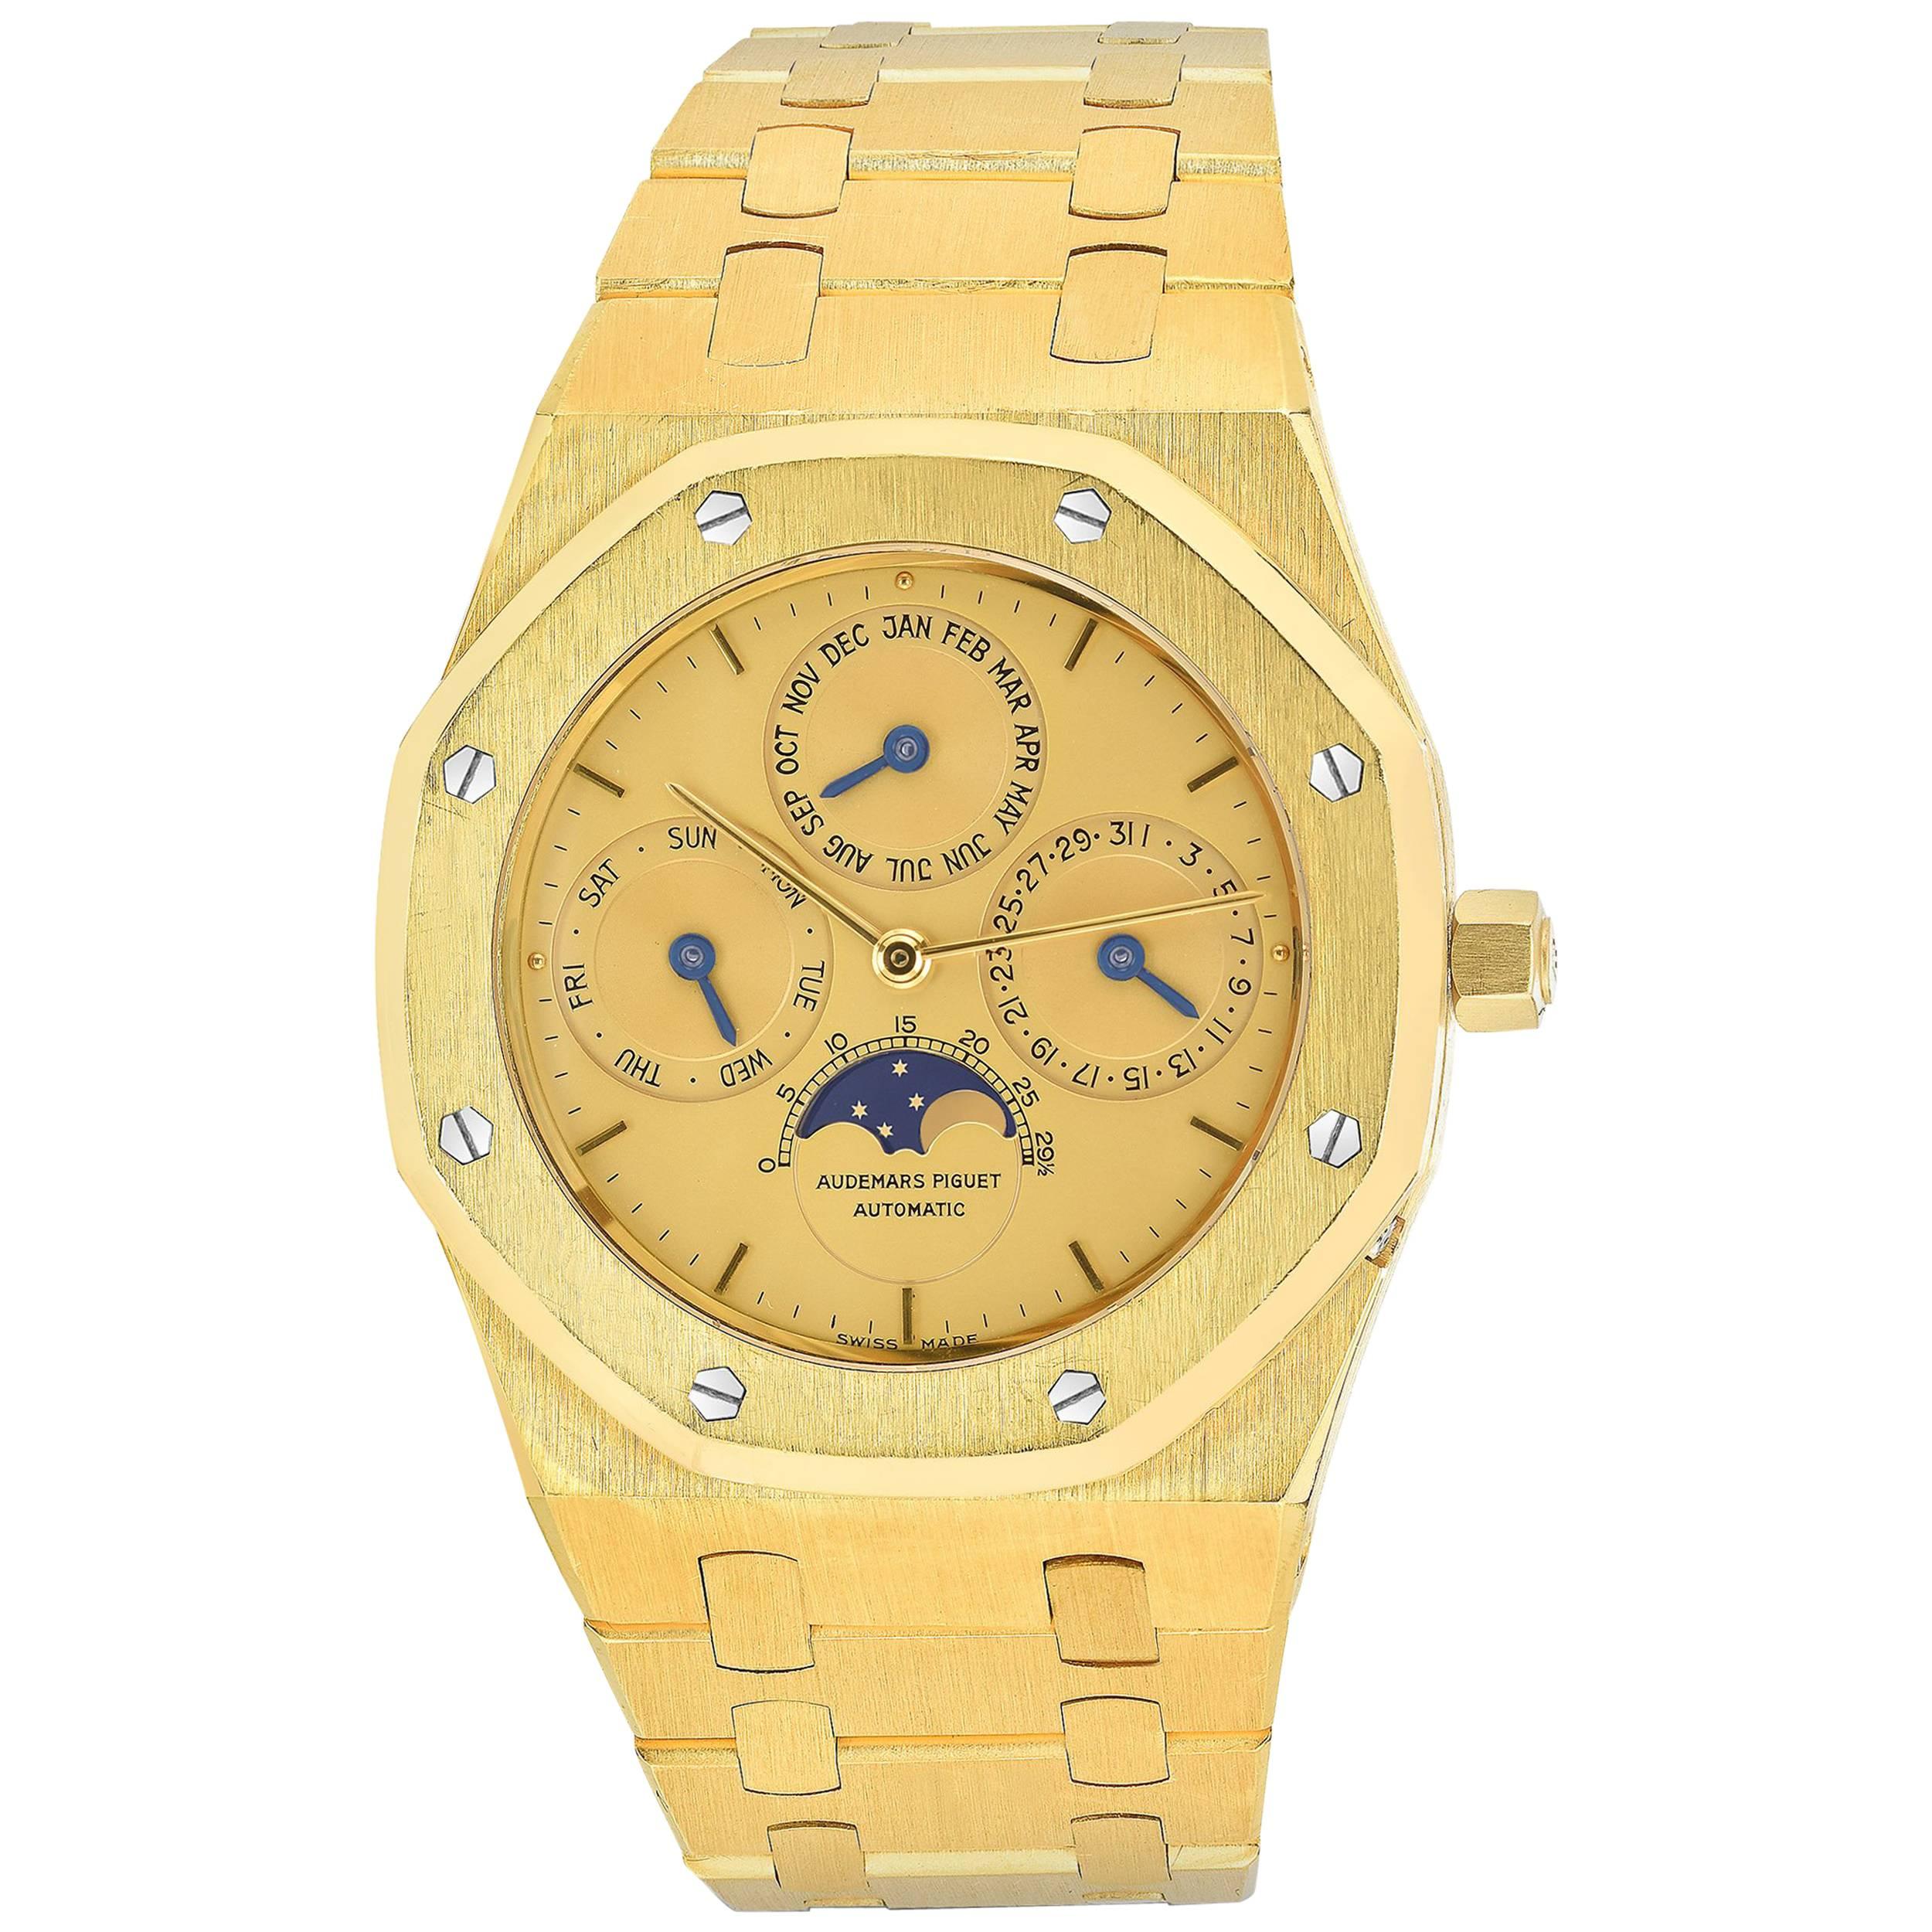 Audemars Piguet Yellow Gold Royal Oak Quantieme Perpetual Calendar Wristwatch